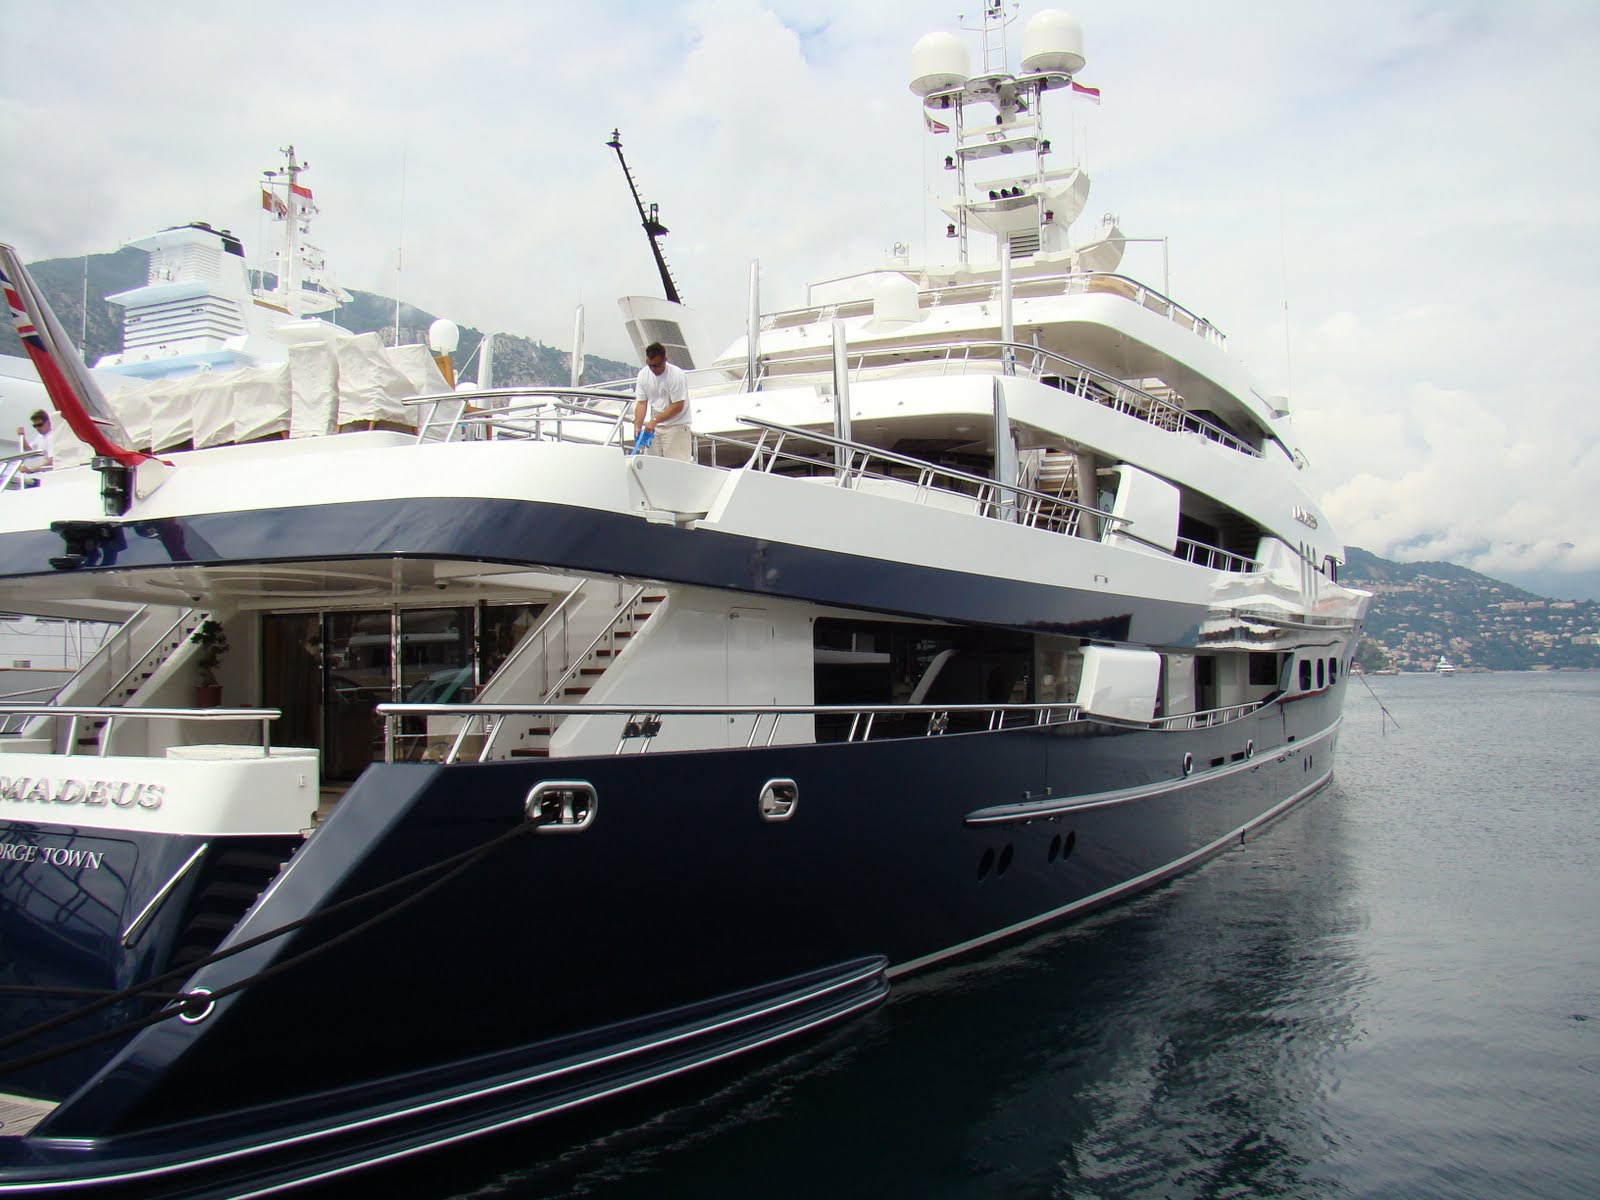 arnault family yacht